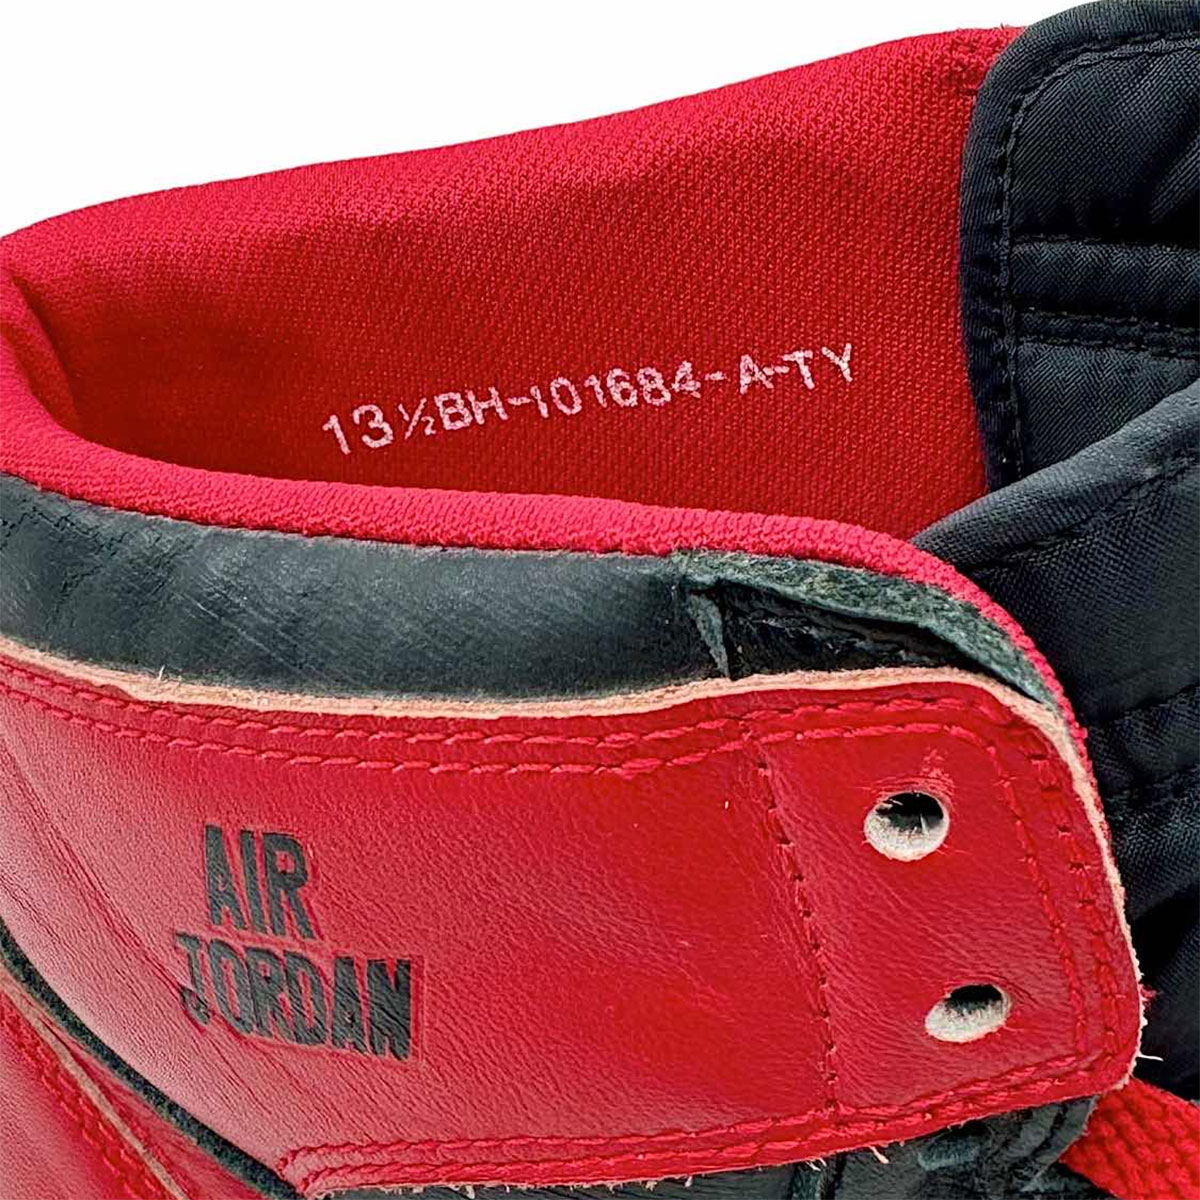 Air Jordan V Retro Grape Laney Package Letter Prototype Black Red 3